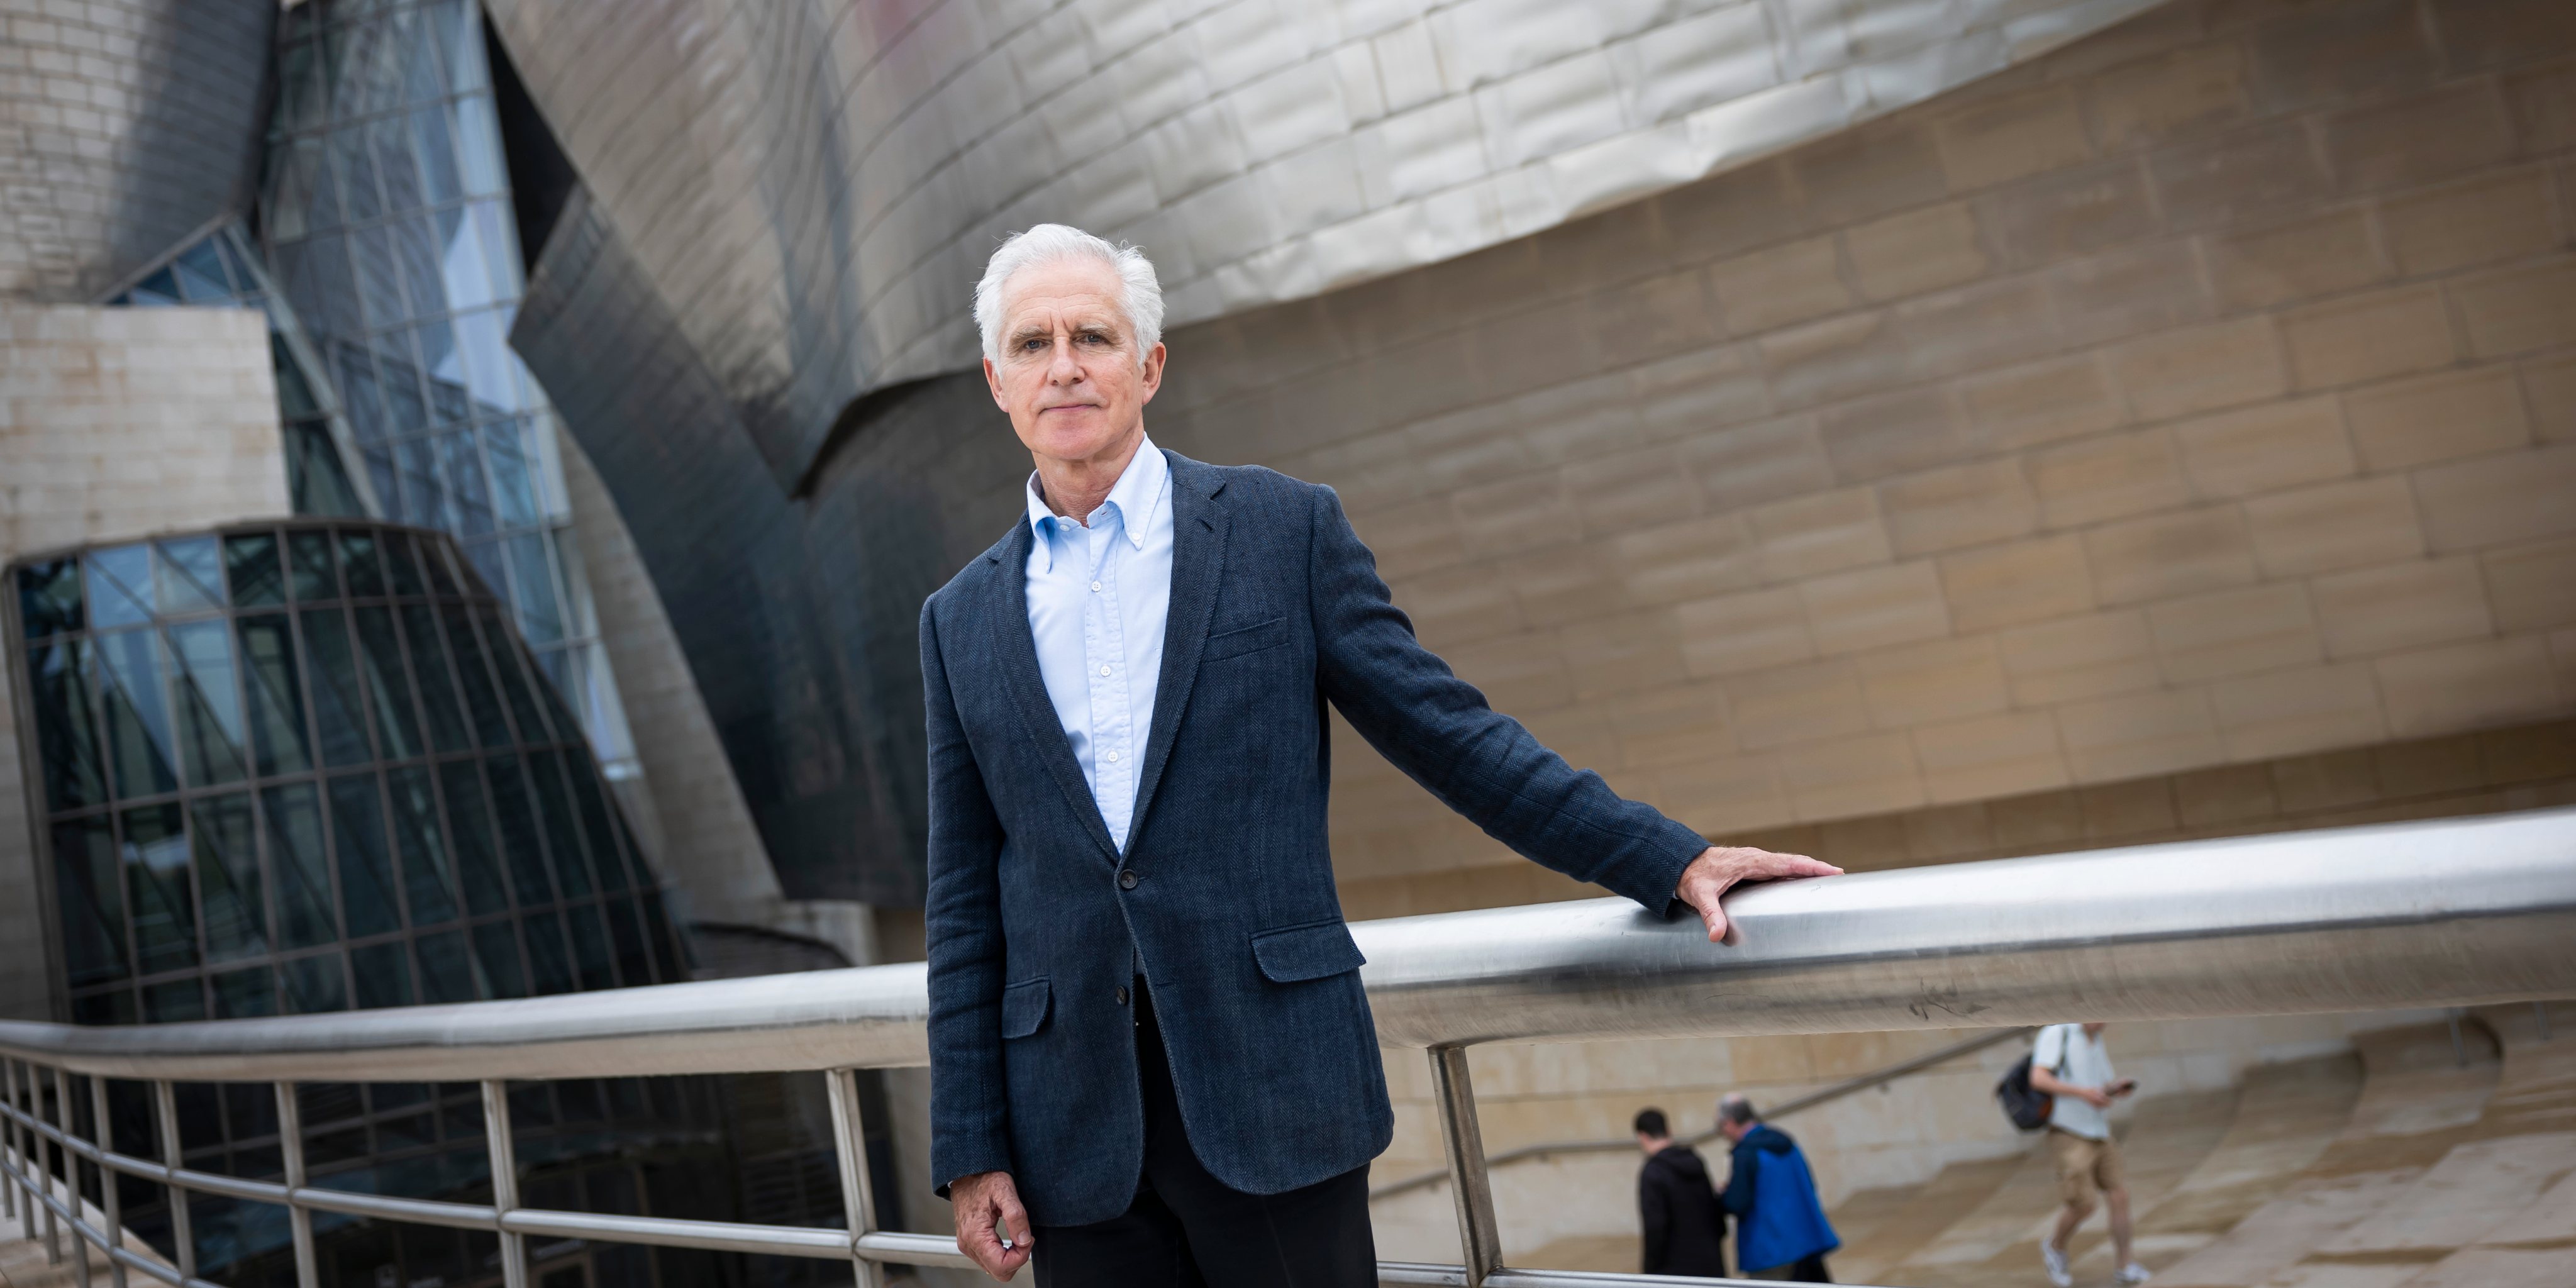 Juan Ignacio Vidarte, 68 anos, diretor geral do Museu Guggenheim Bilbau, diante do edifício projetado pelo arquiteto Frank Gehry